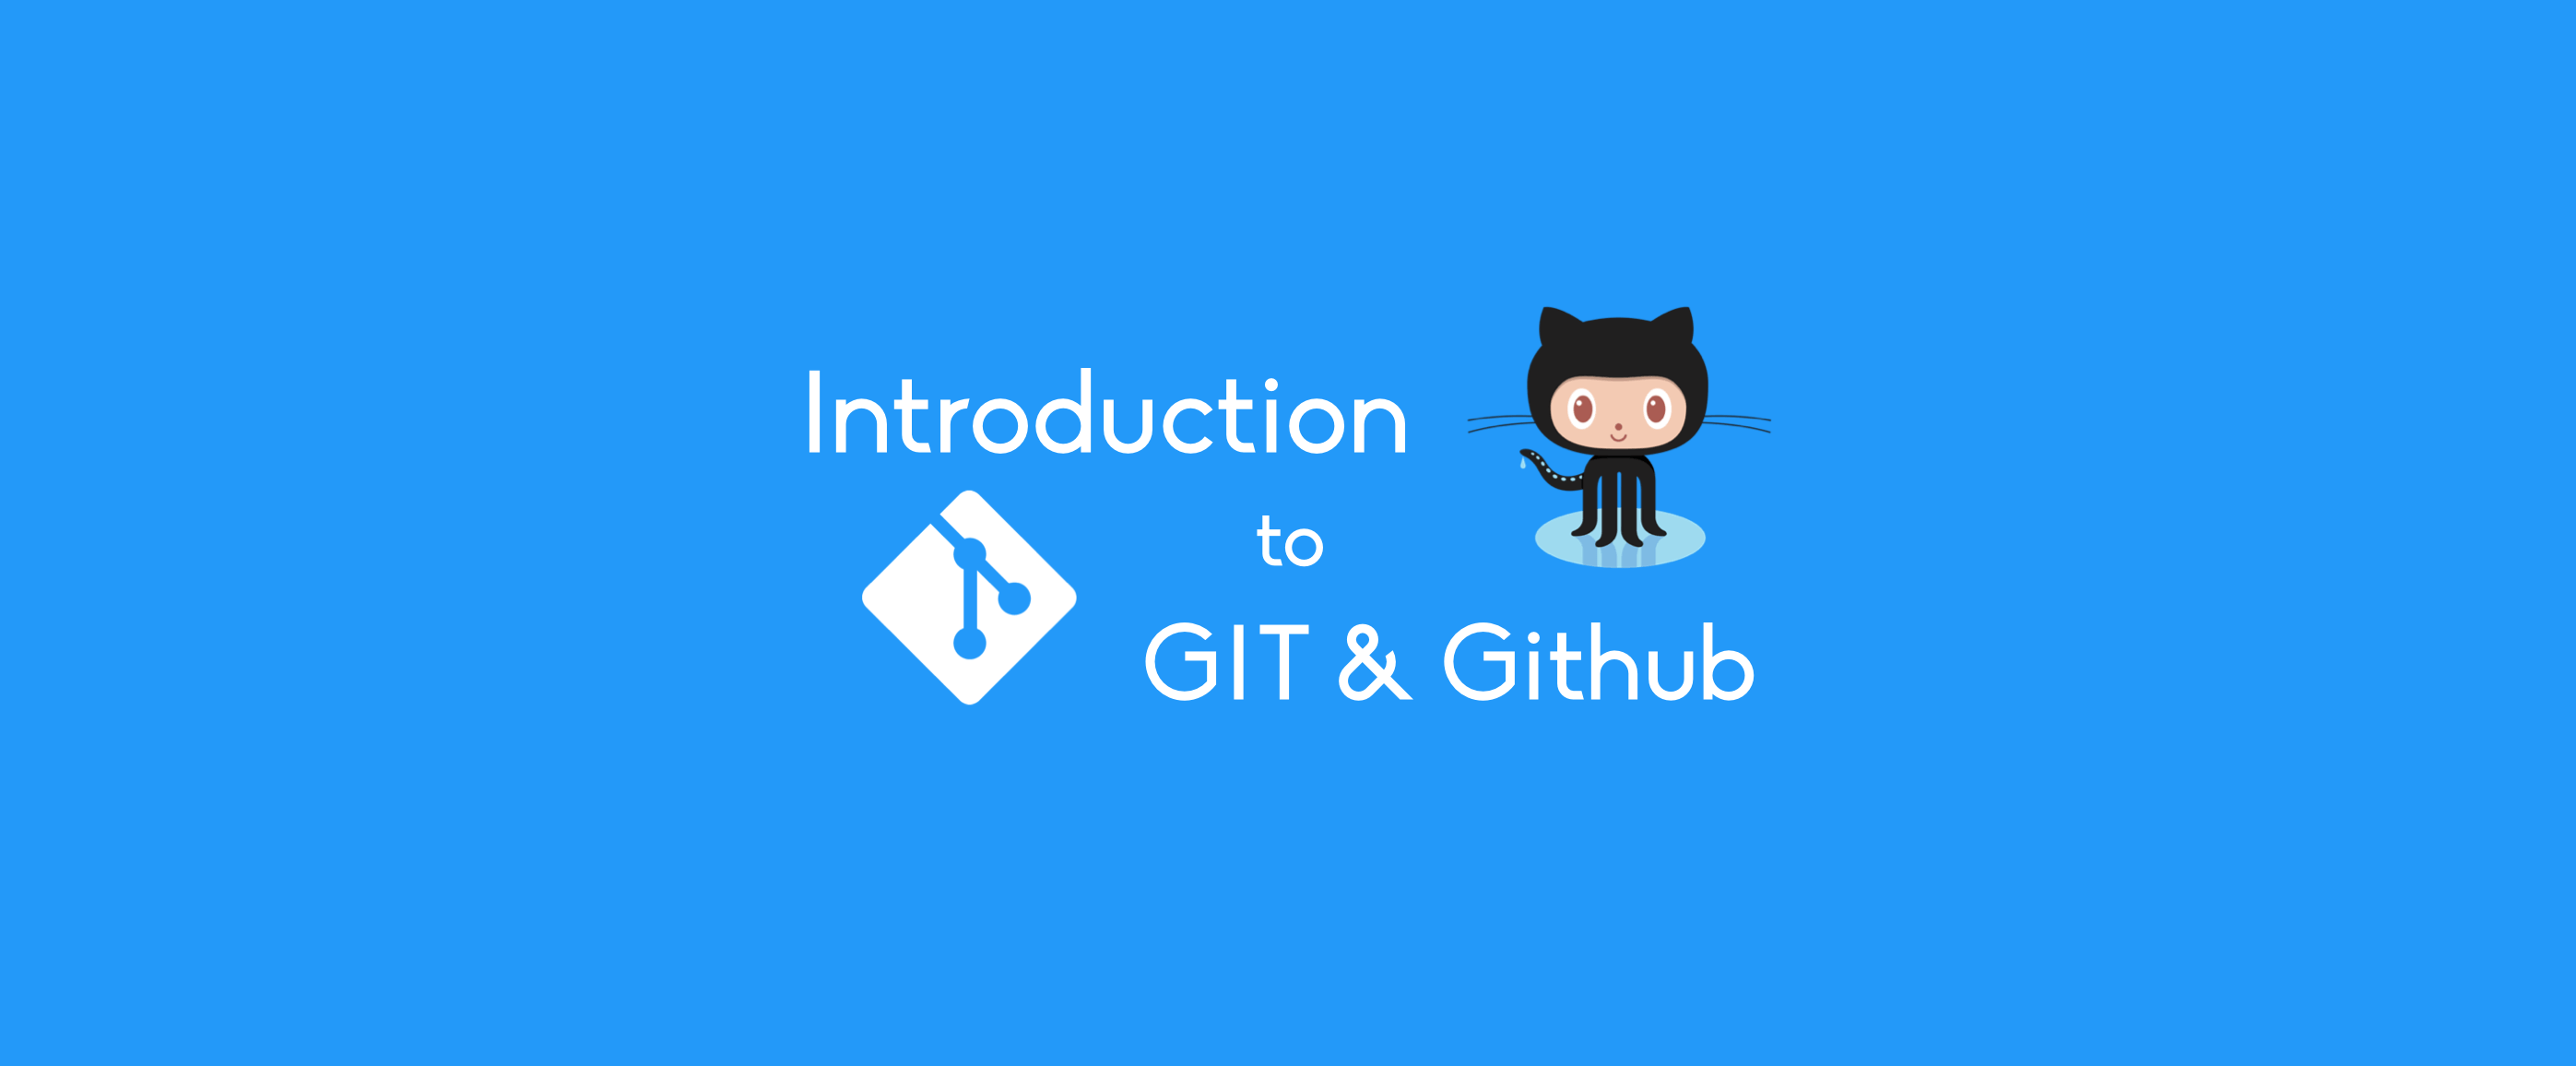 2015/08/introduction-to-git-and-github